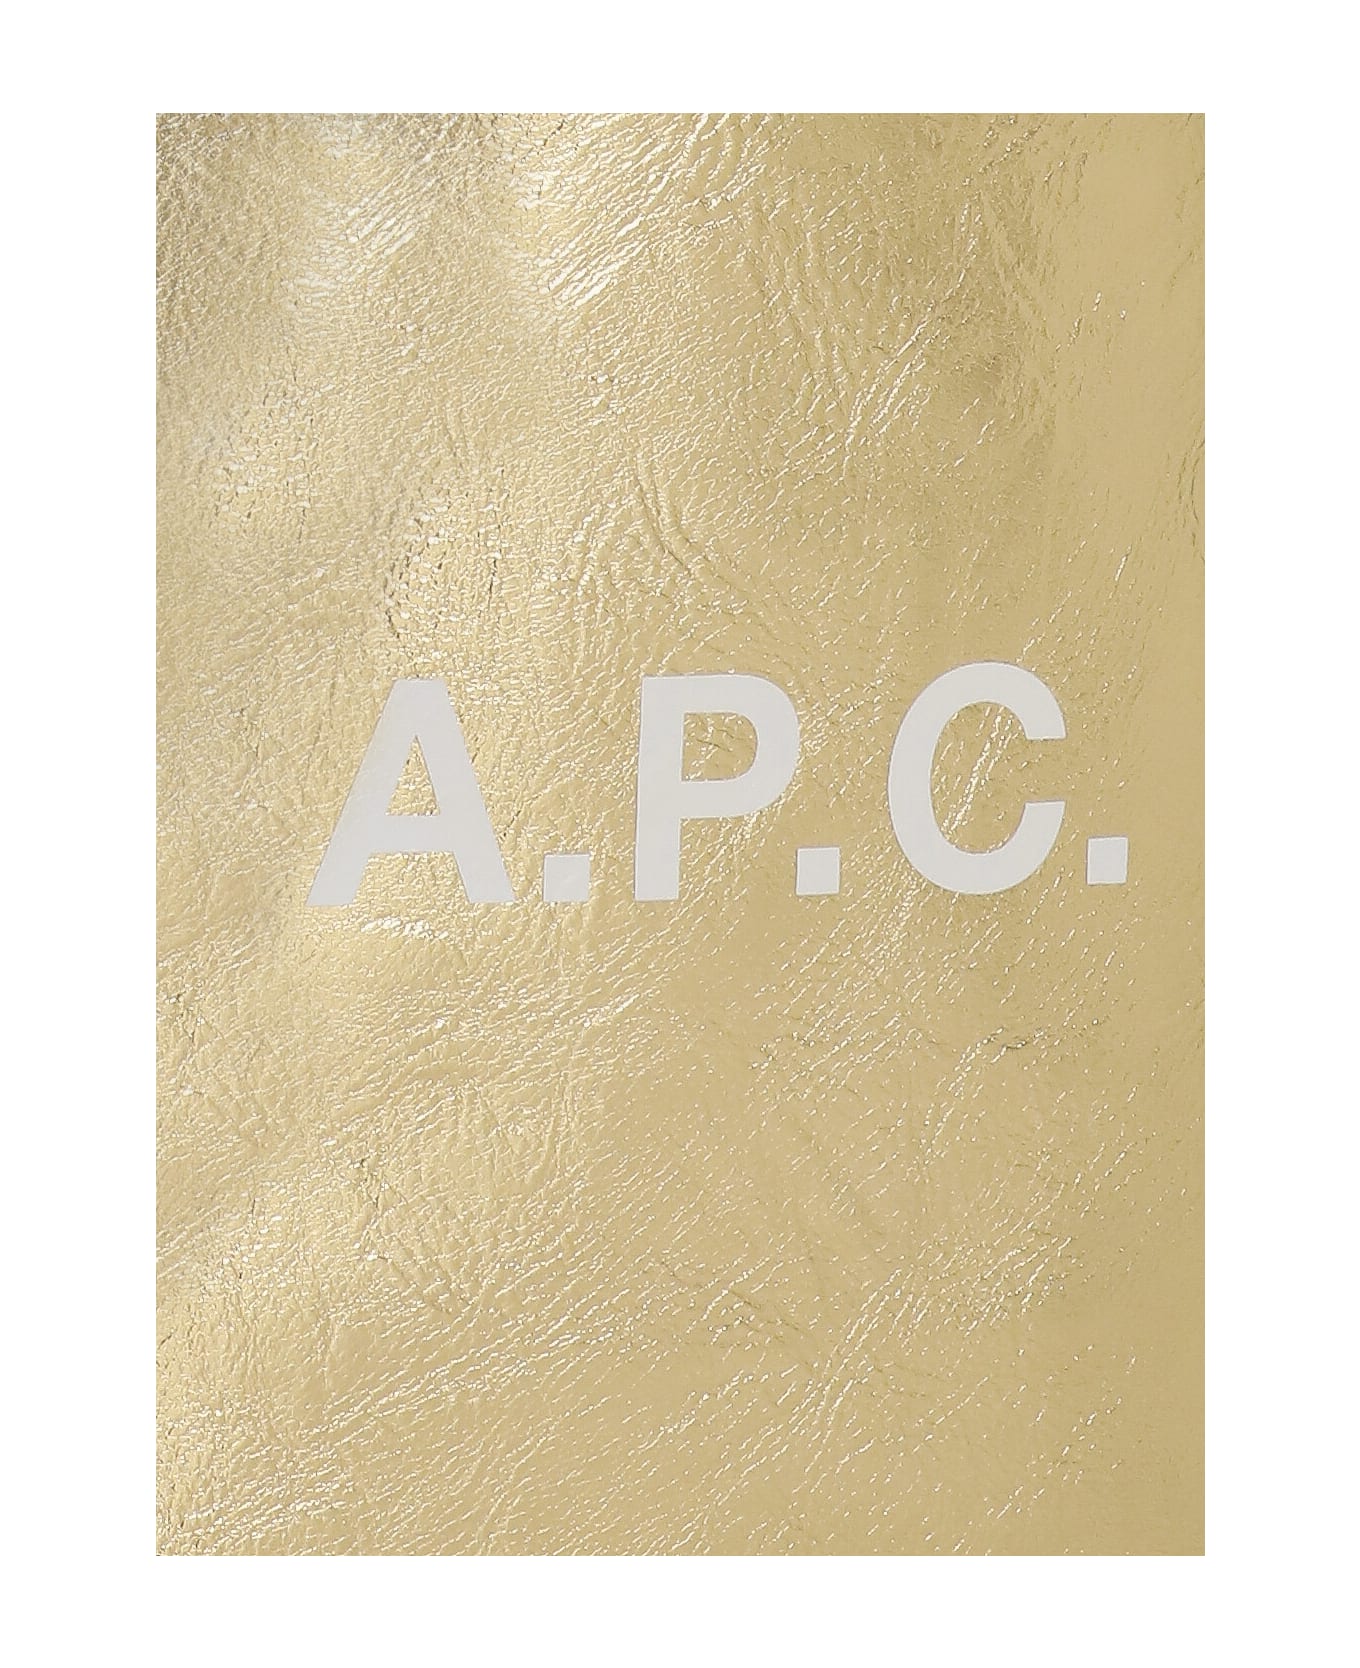 A.P.C. Ninon Tote Bag - Golden トートバッグ